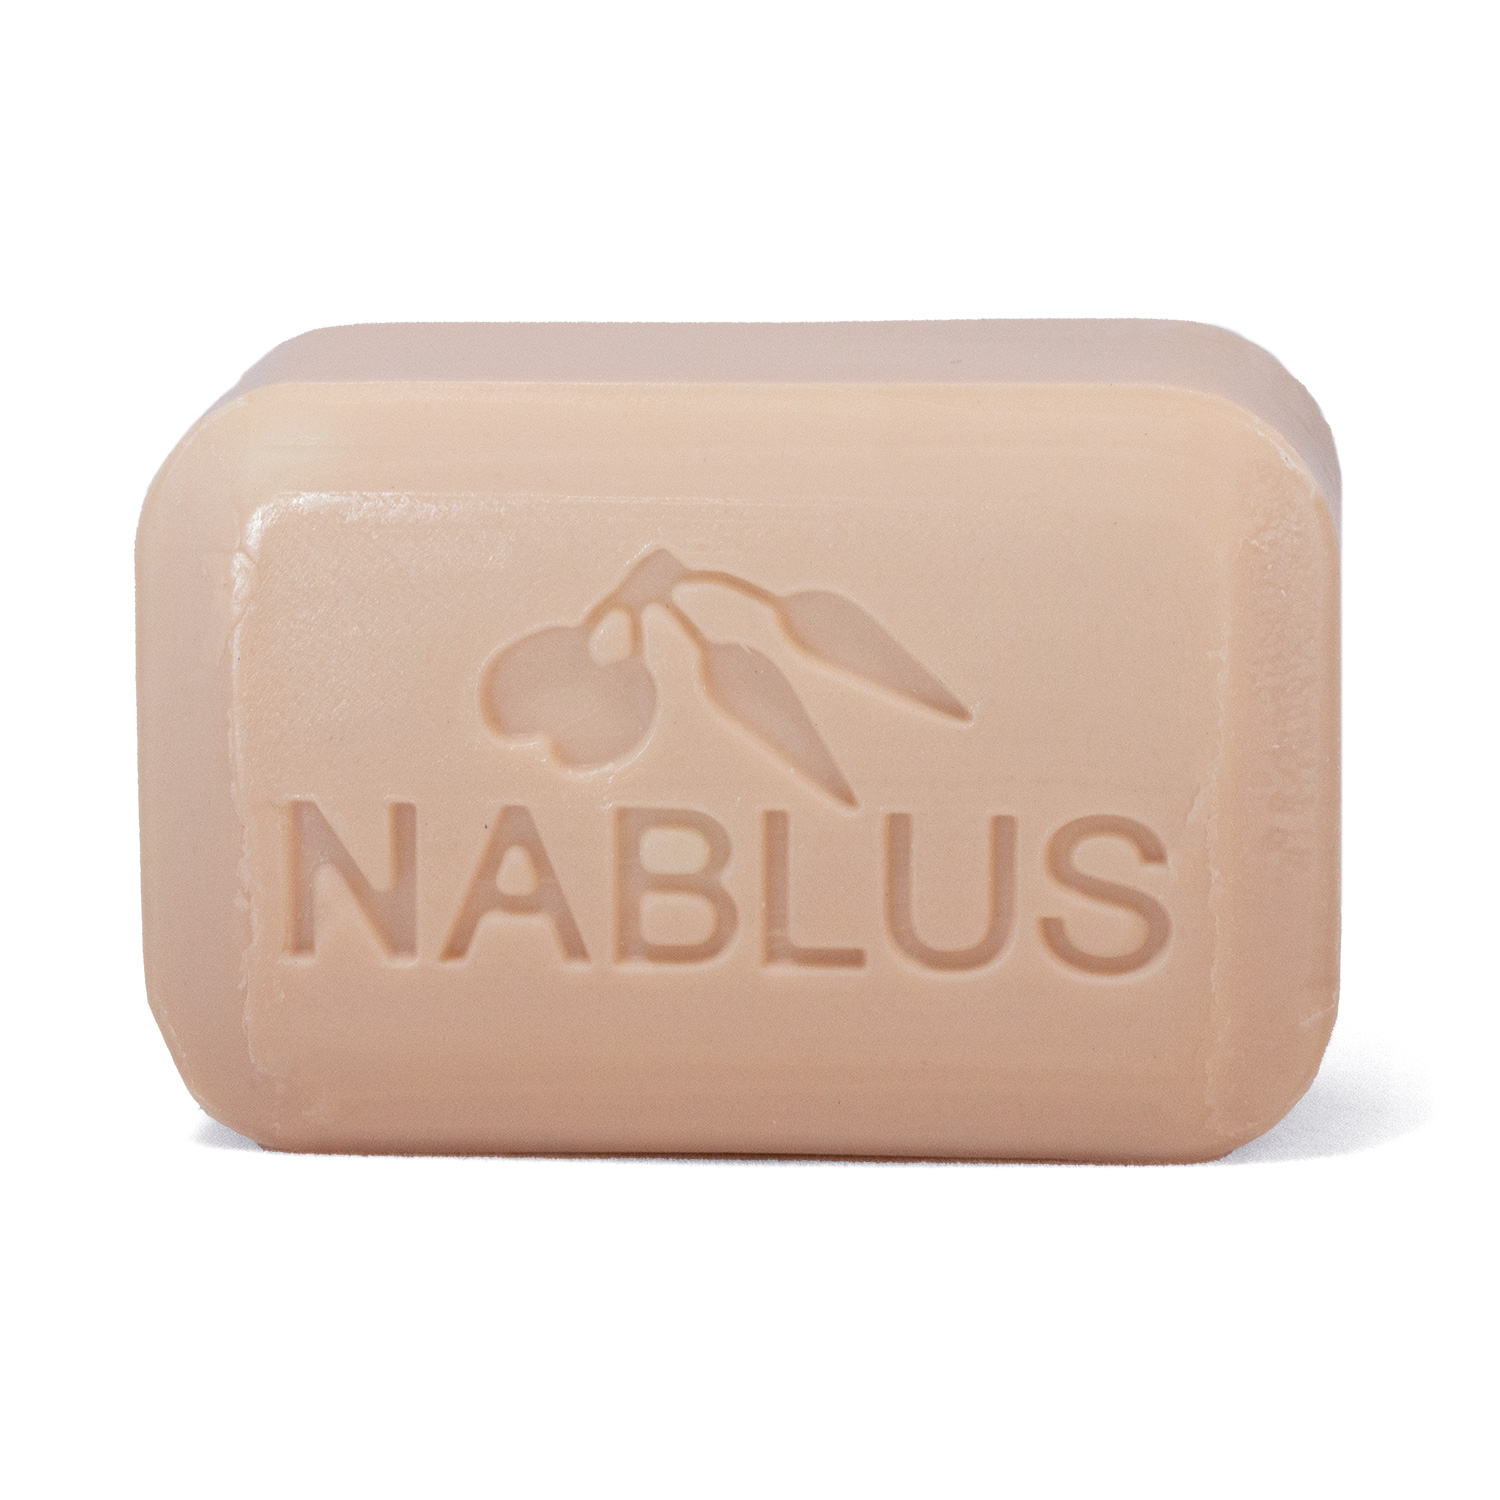 https://nablussoapco.com/wp-content/uploads/2020/05/nablus-olive-oil-soap-lavender-bar.jpg